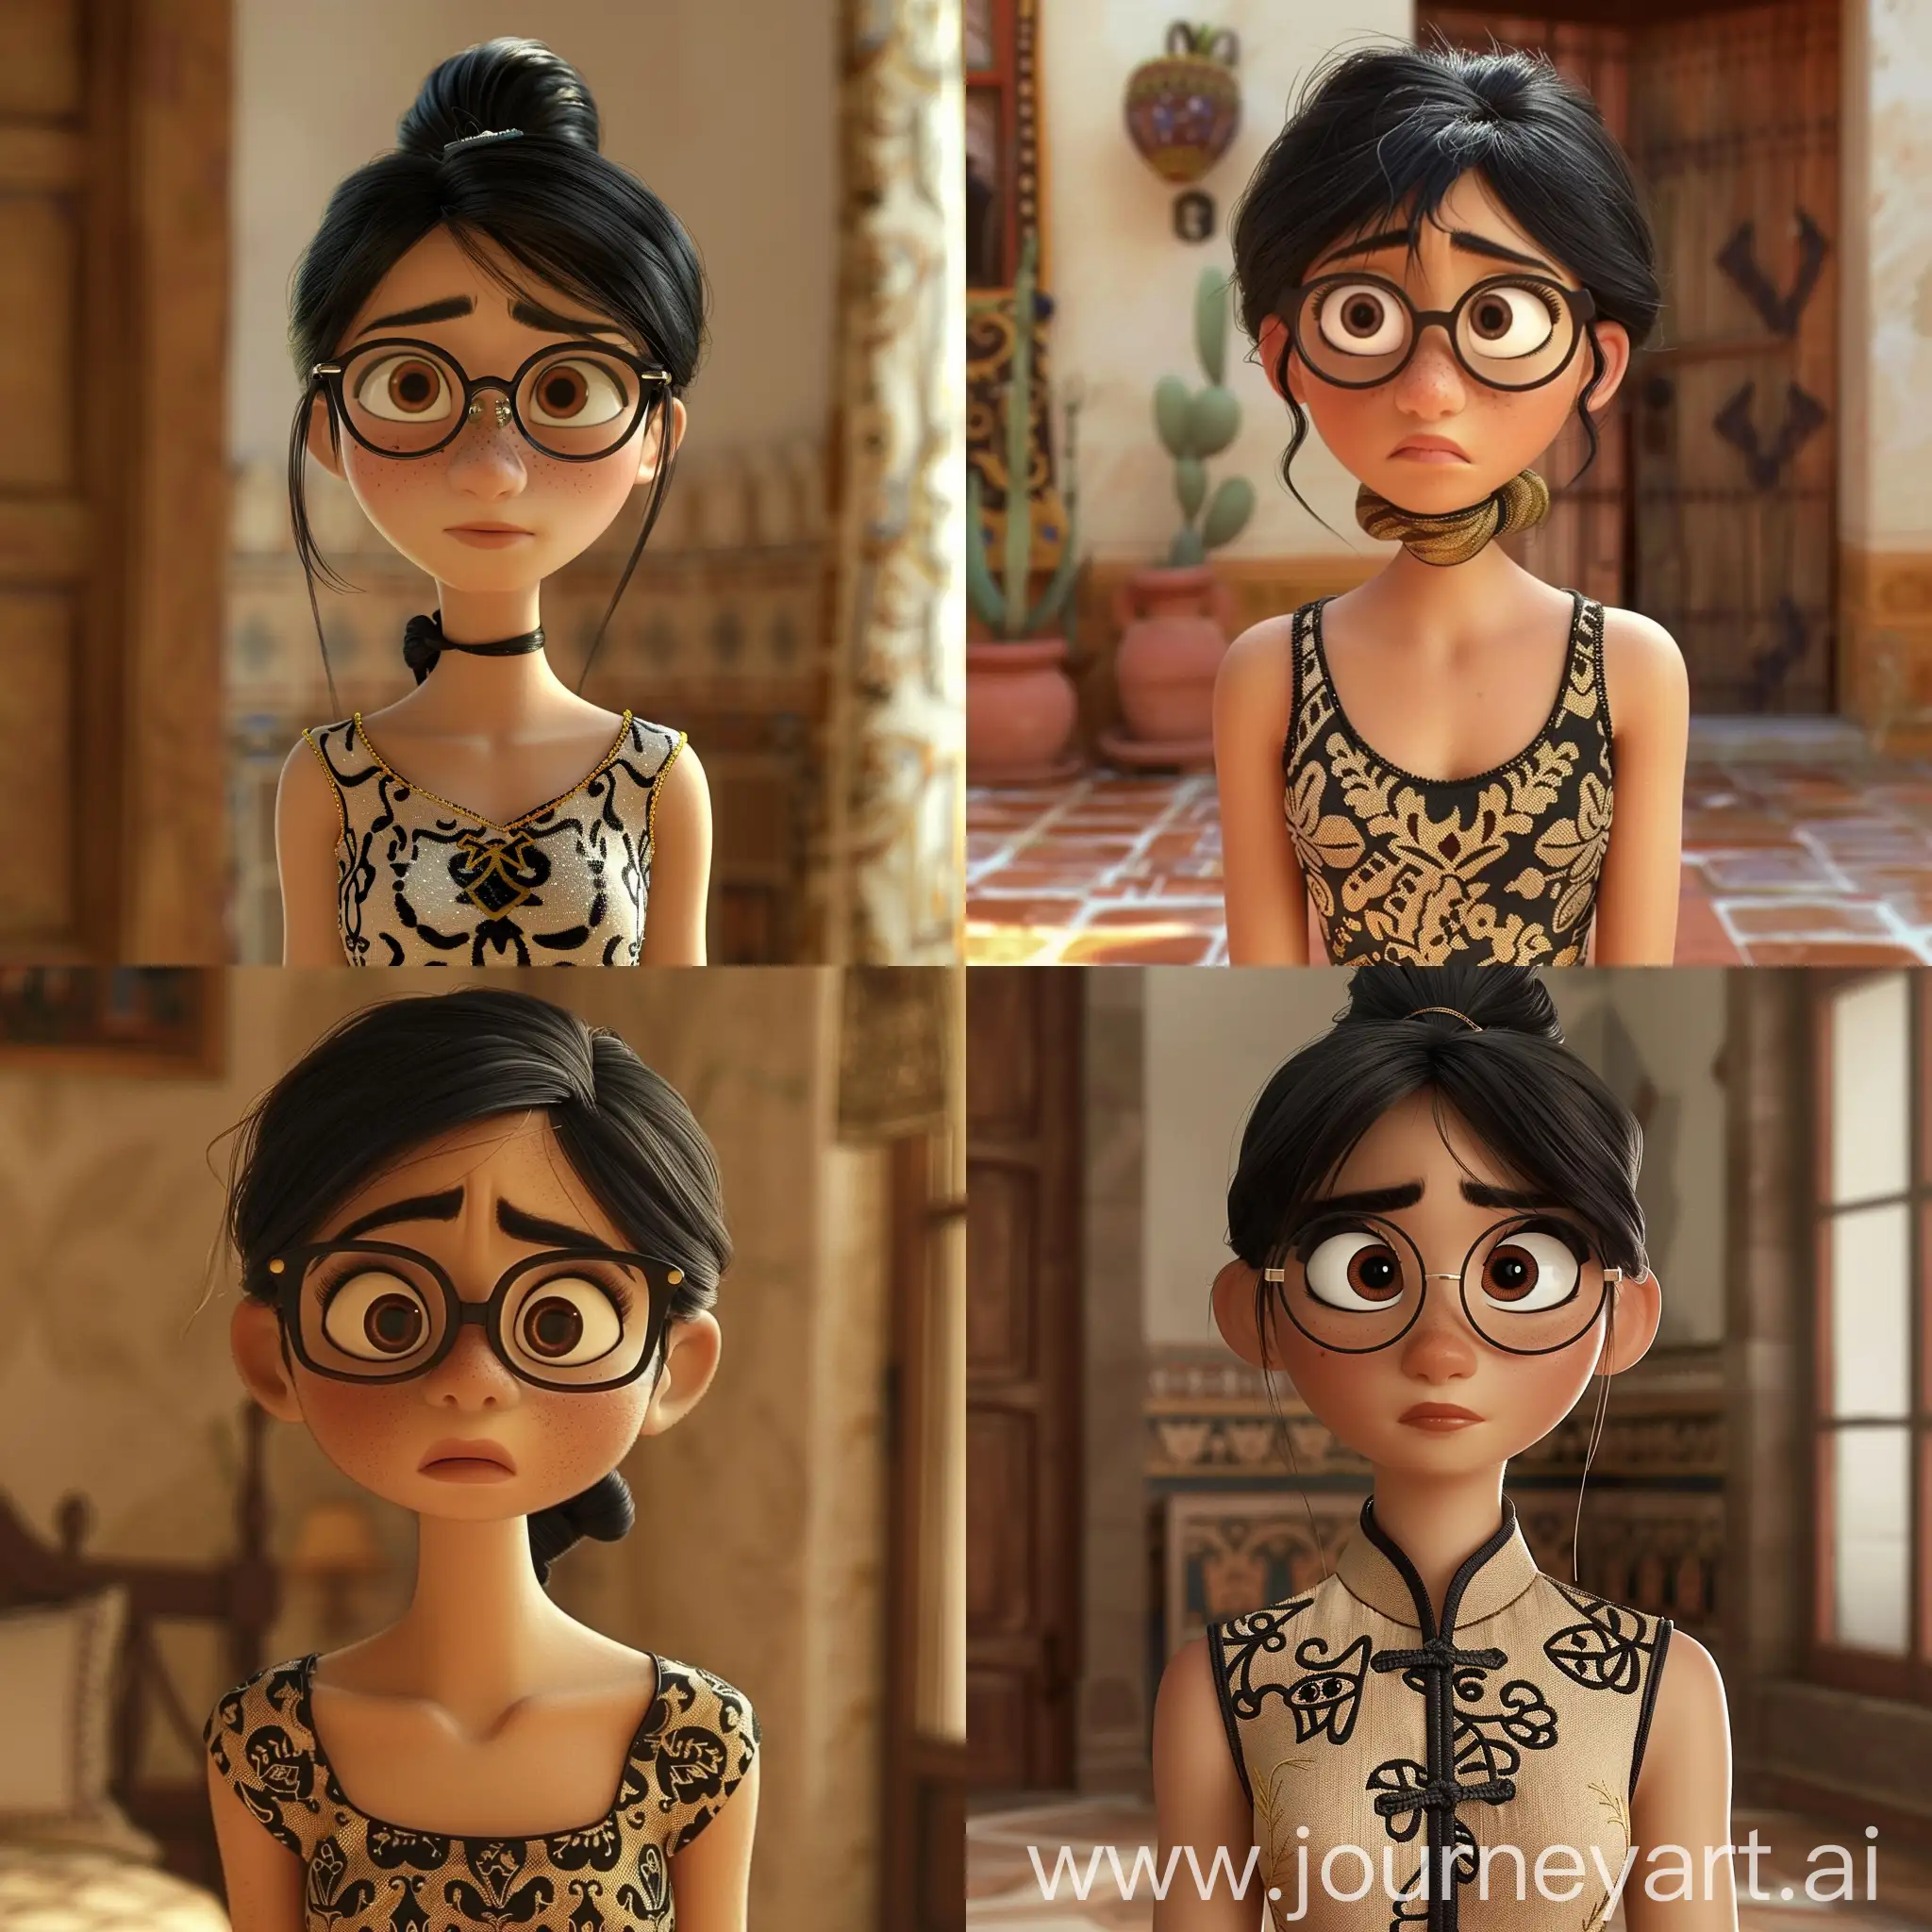 Pixar-Animation-Brunette-Woman-Building-Imagination